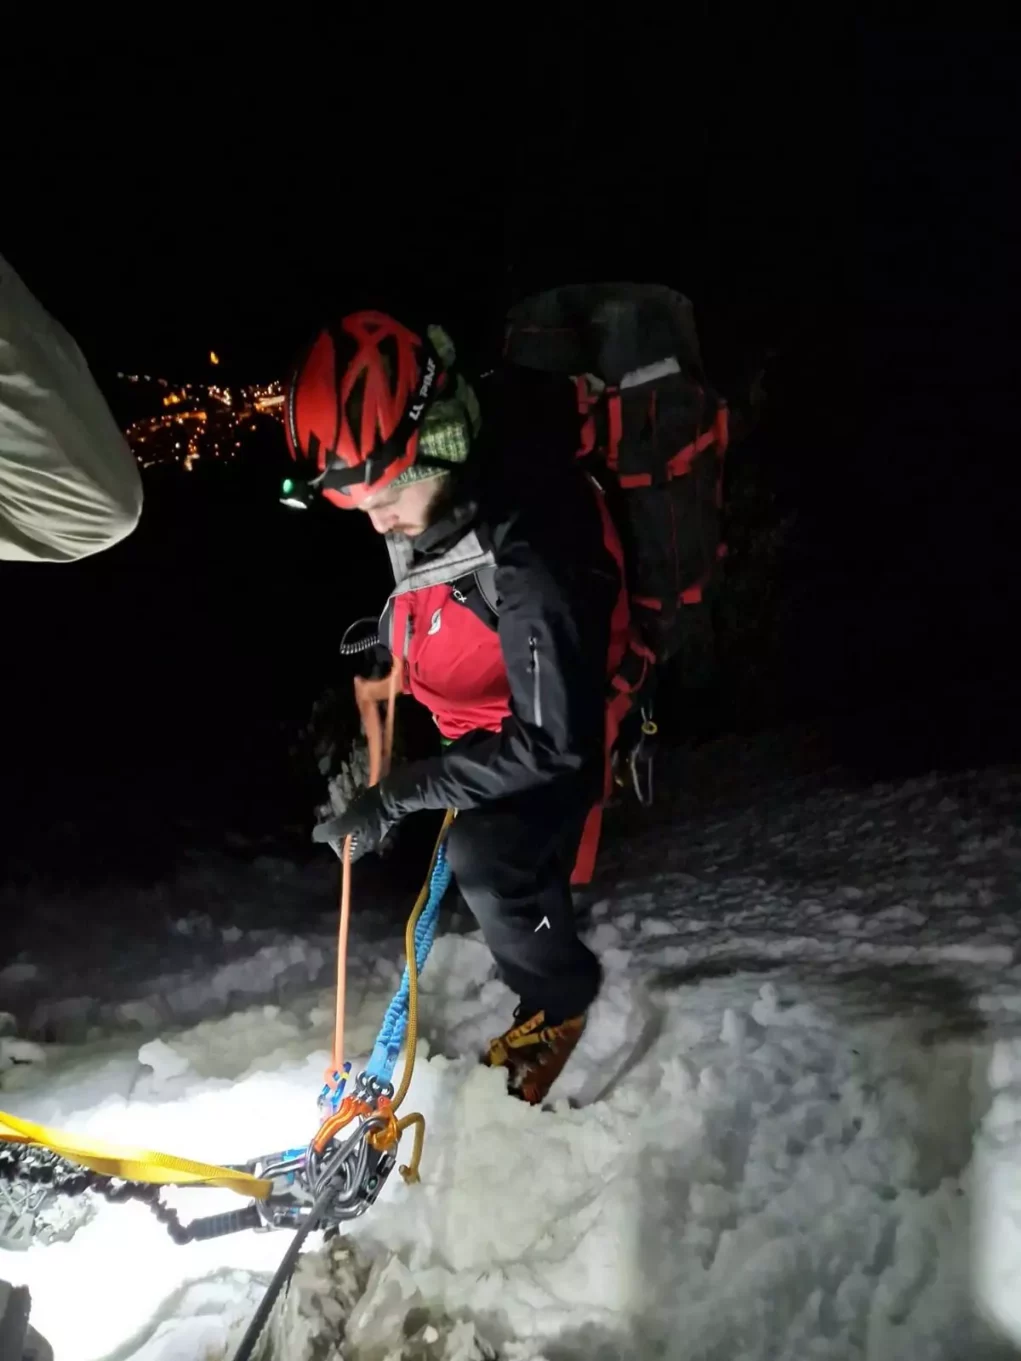 Kletterer in Not: Bergrettung riskierte bei Einsatz ihr Leben